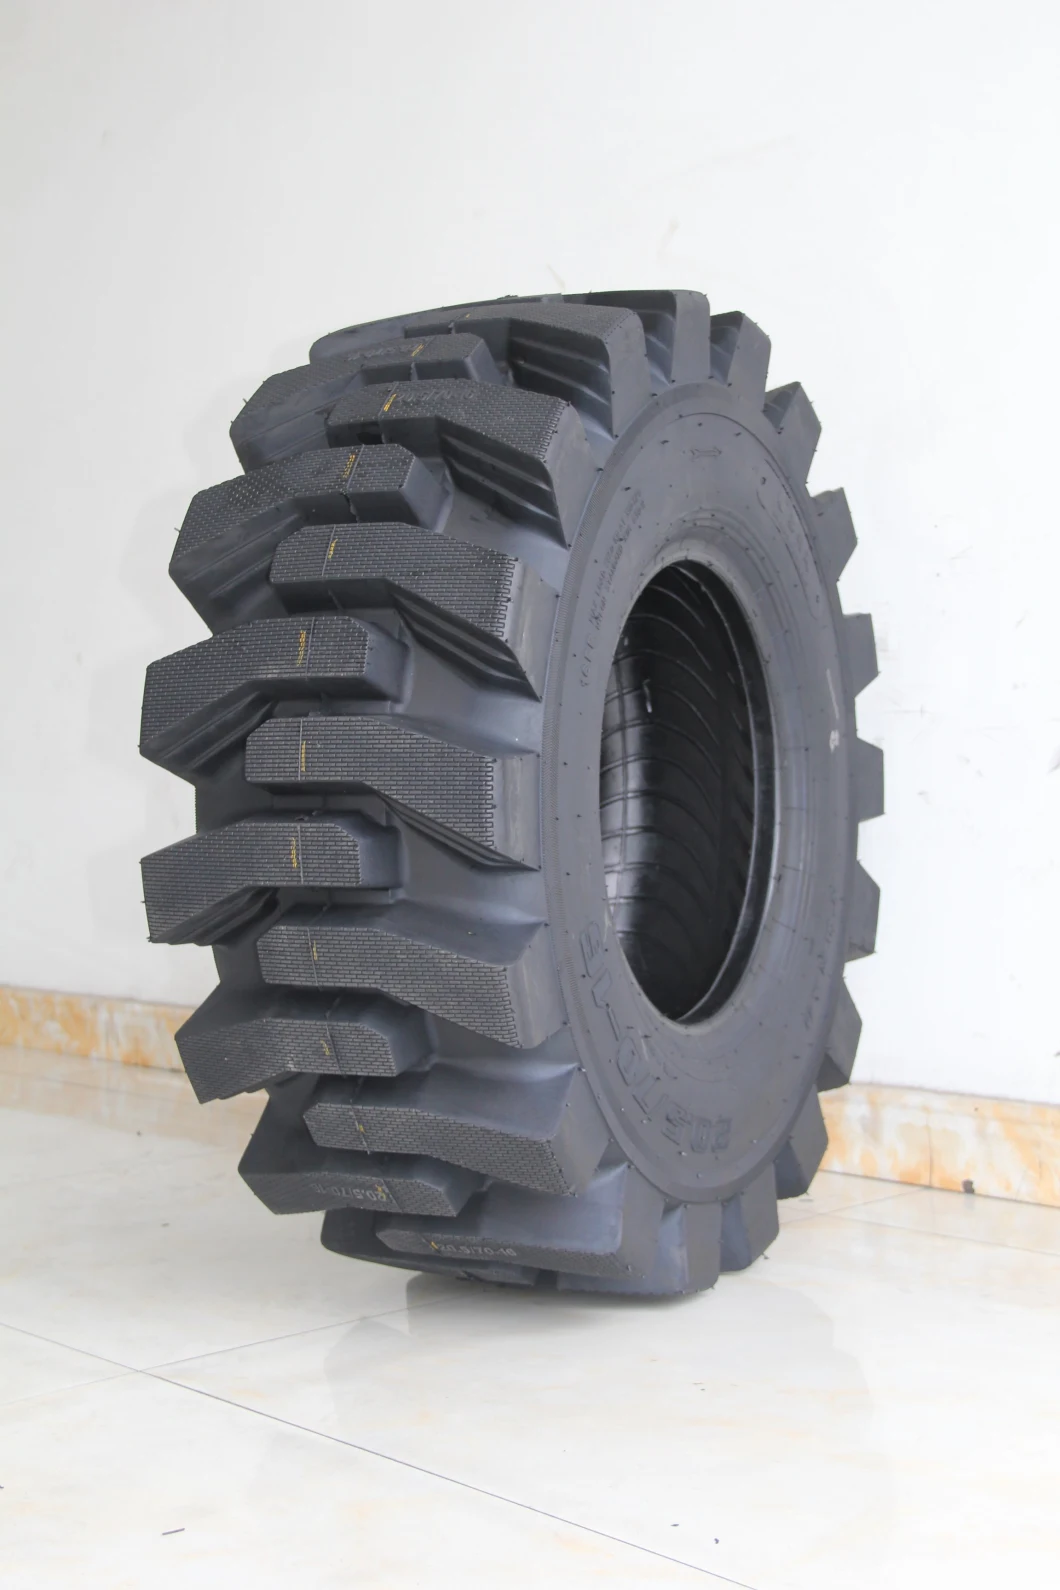 Taihao/Alwaysrun Brand Bias Tyre Excavator G2 (20.5/70-16, 16/70-20) OTR Tyre